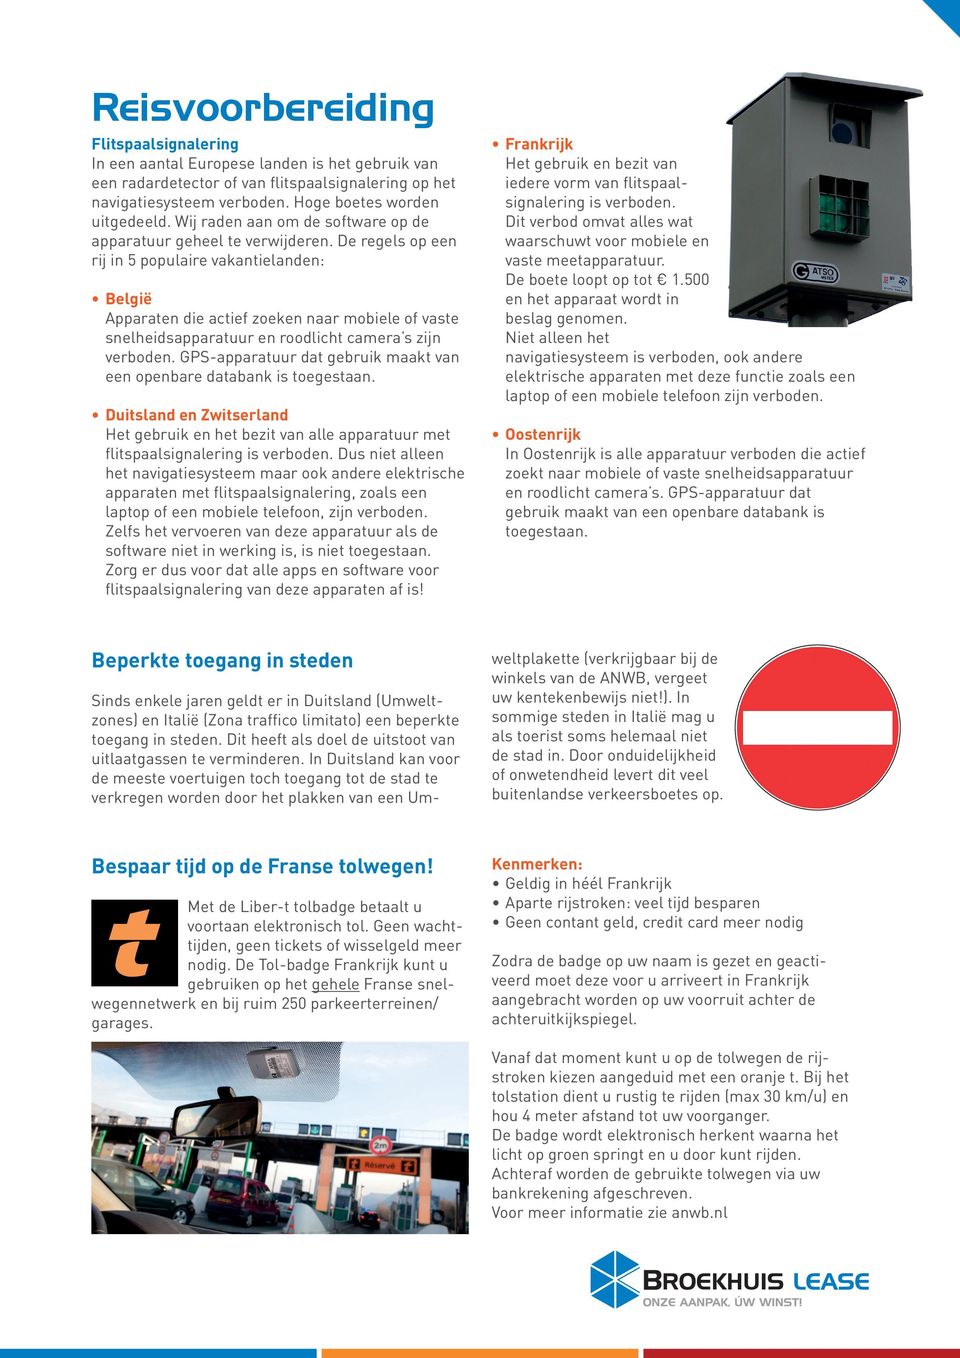 De regels op een rij in 5 populaire vakantielanden: België Apparaten die actief zoeken naar mobiele of vaste snelheidsapparatuur en roodlicht camera s zijn verboden.